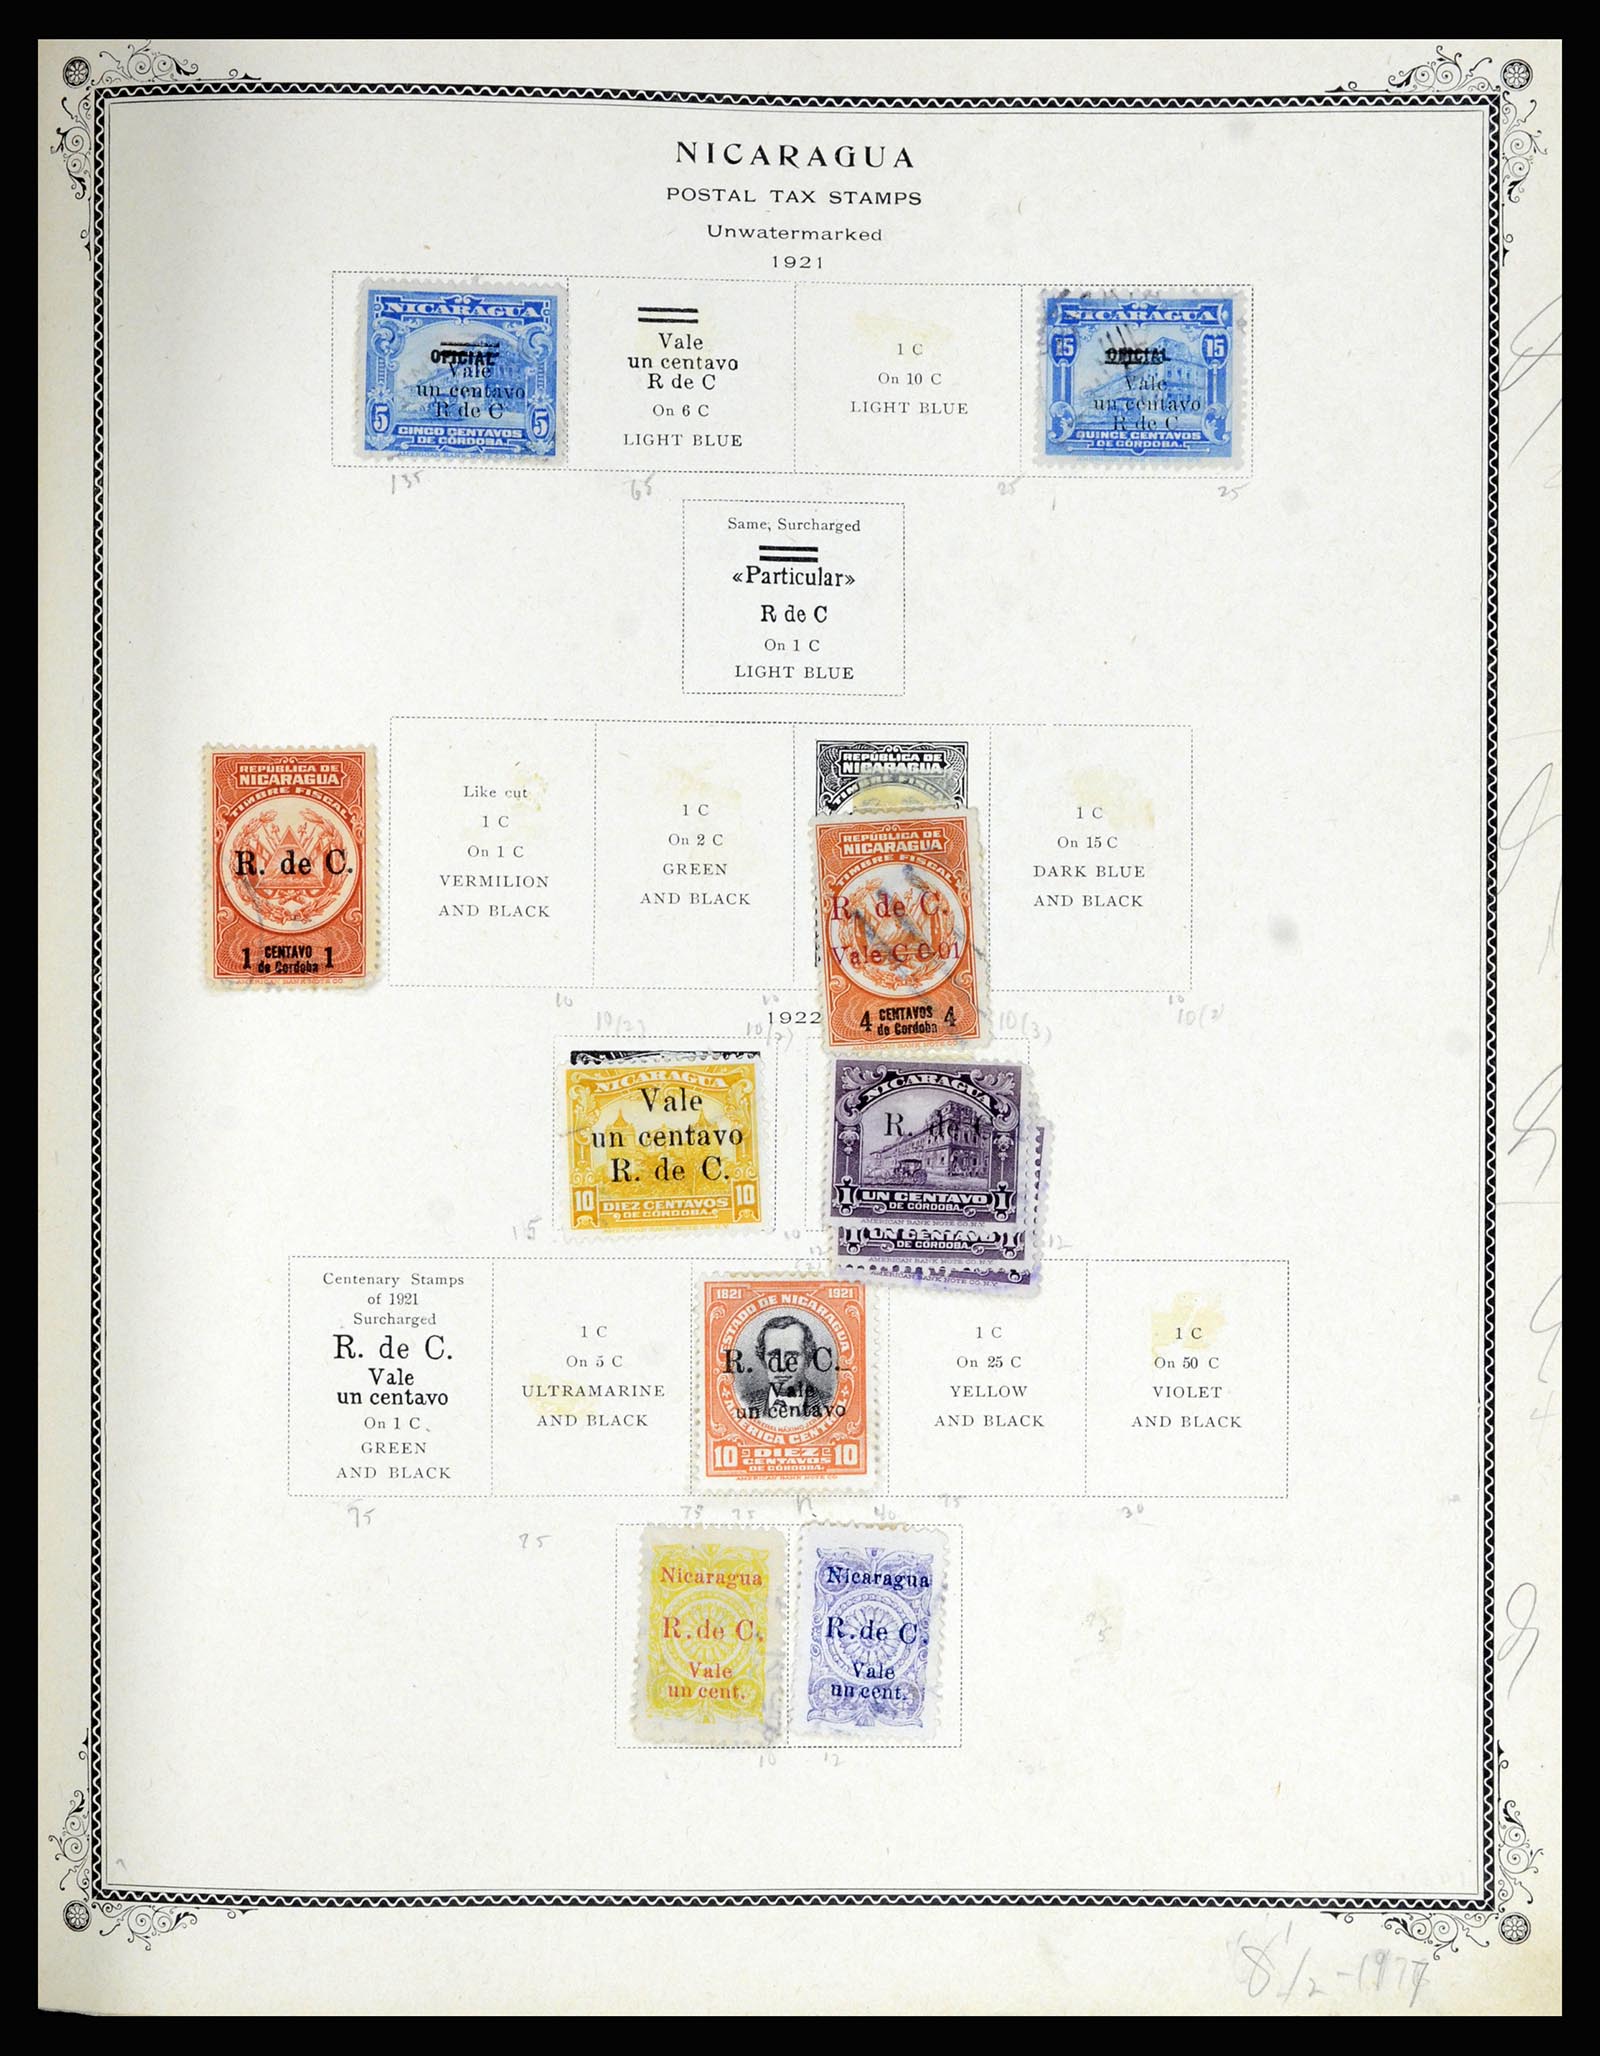 36494 185 - Stamp collection 36494 Nicaragua 1902-1945.